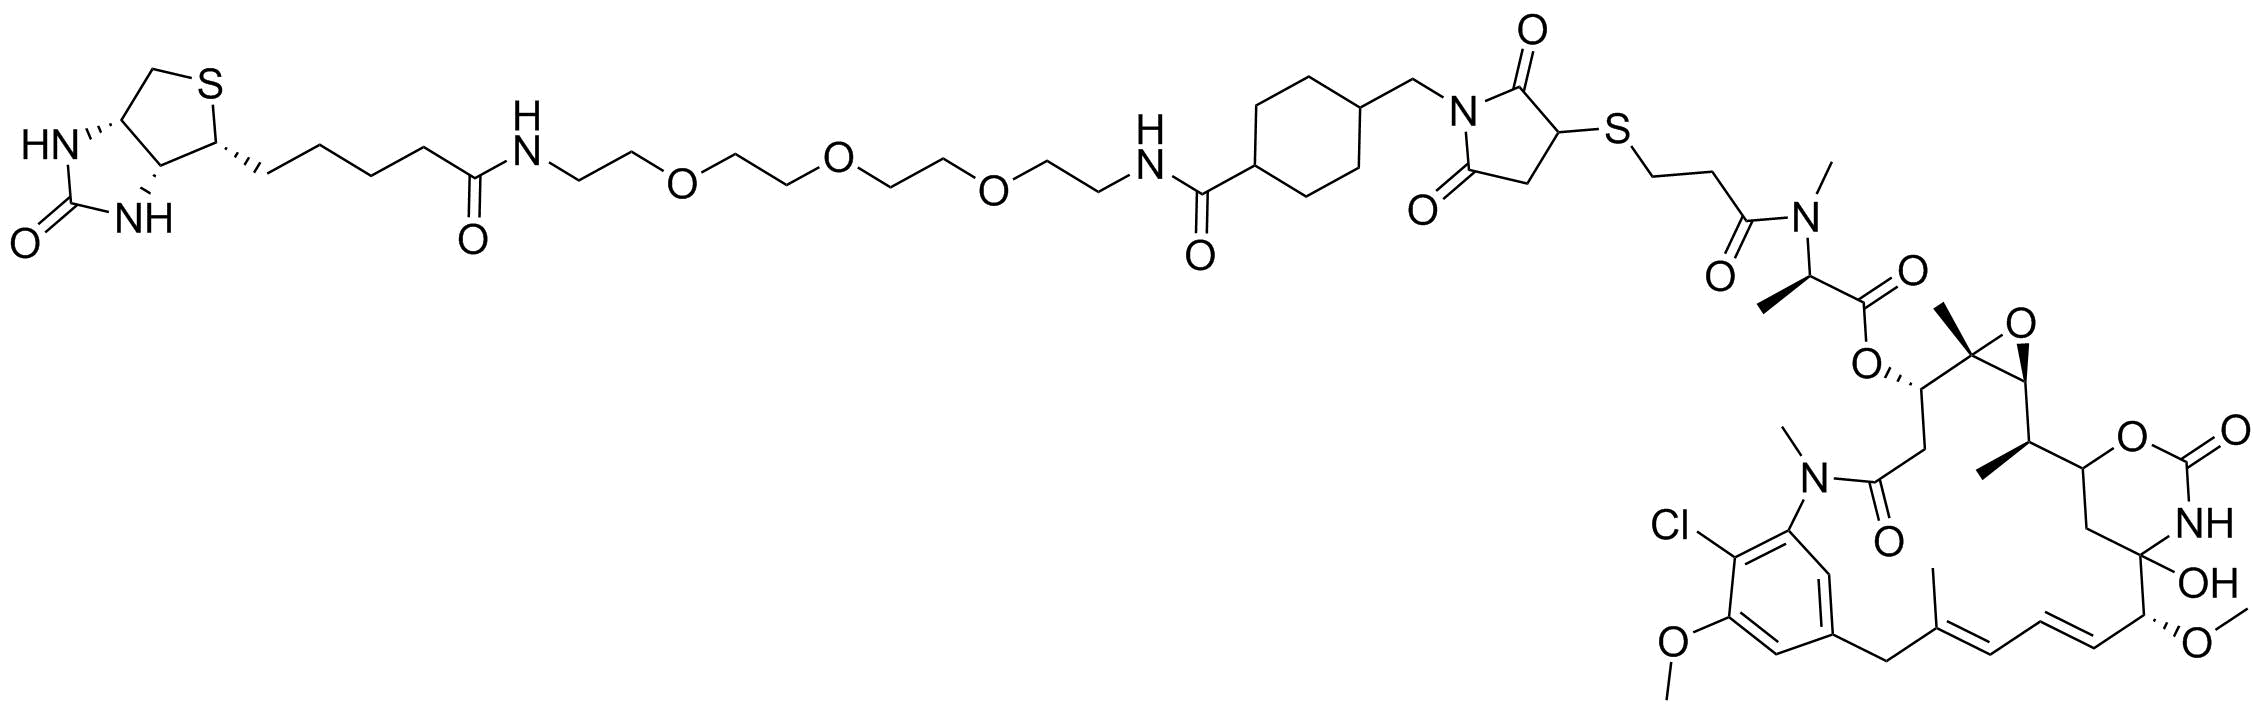 DM1-MCC-PEG3-Biotin